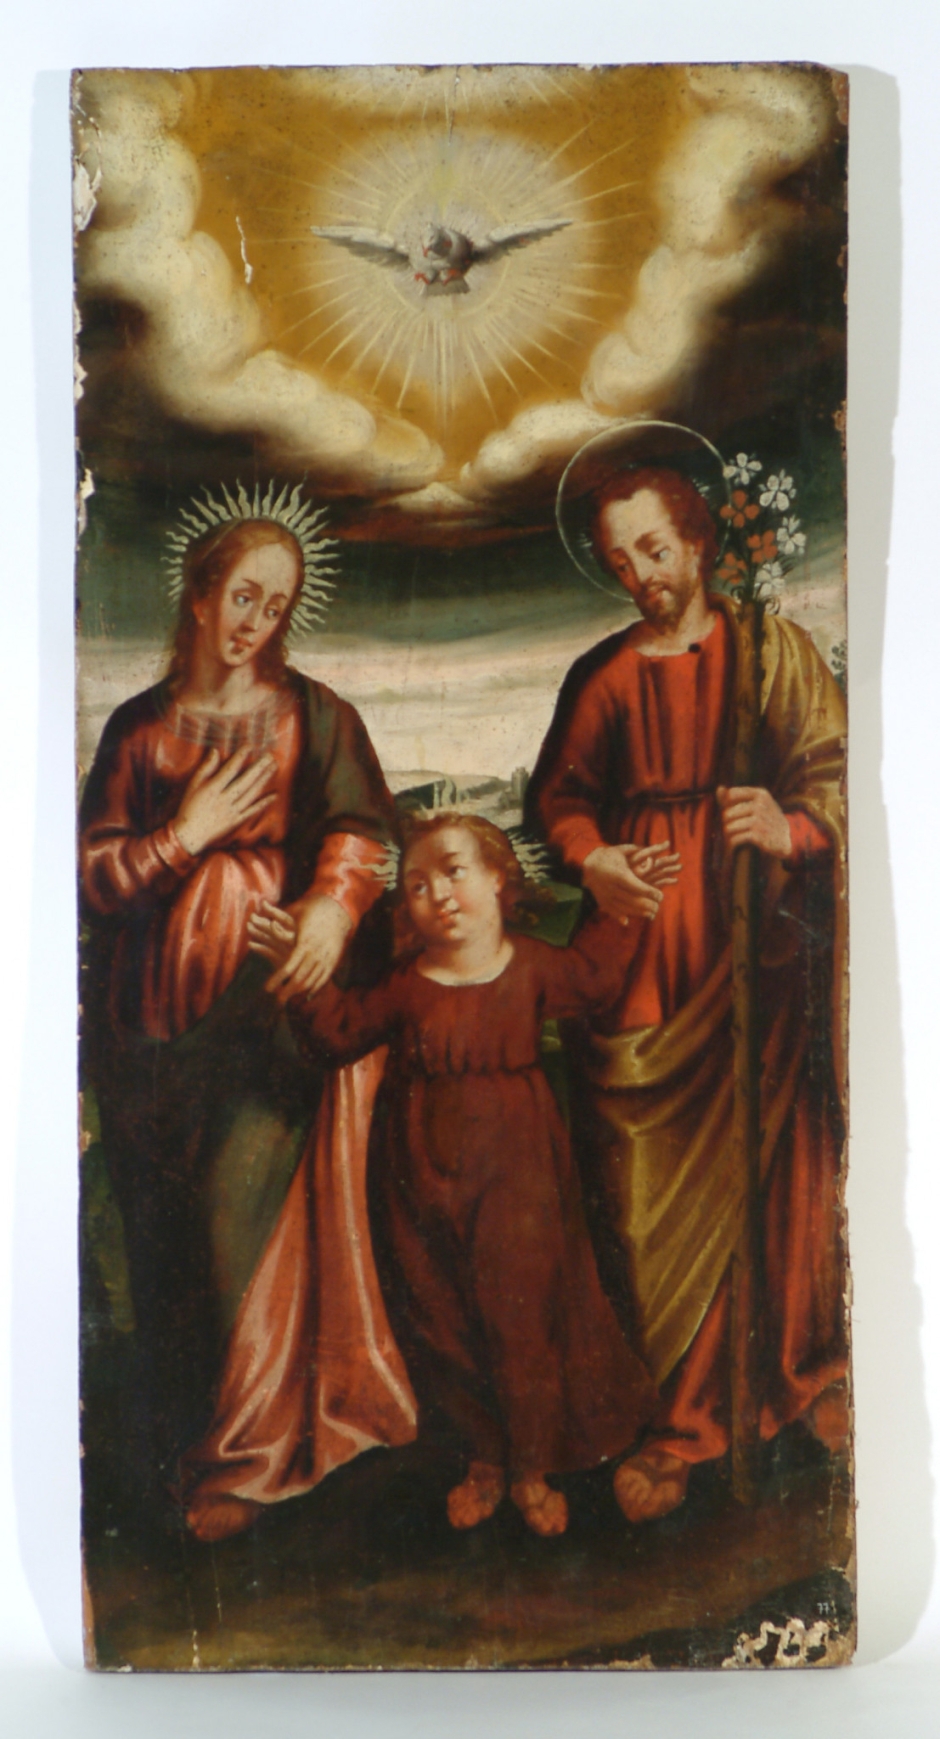 Pintura de la Sagrada Família, procedent de l'església de Sant Salvador de Torroella, primera meitat del s. XVII. Ubicació actual: Museu Diocesà i Comarcal de Solsona (MDCS 78.2)